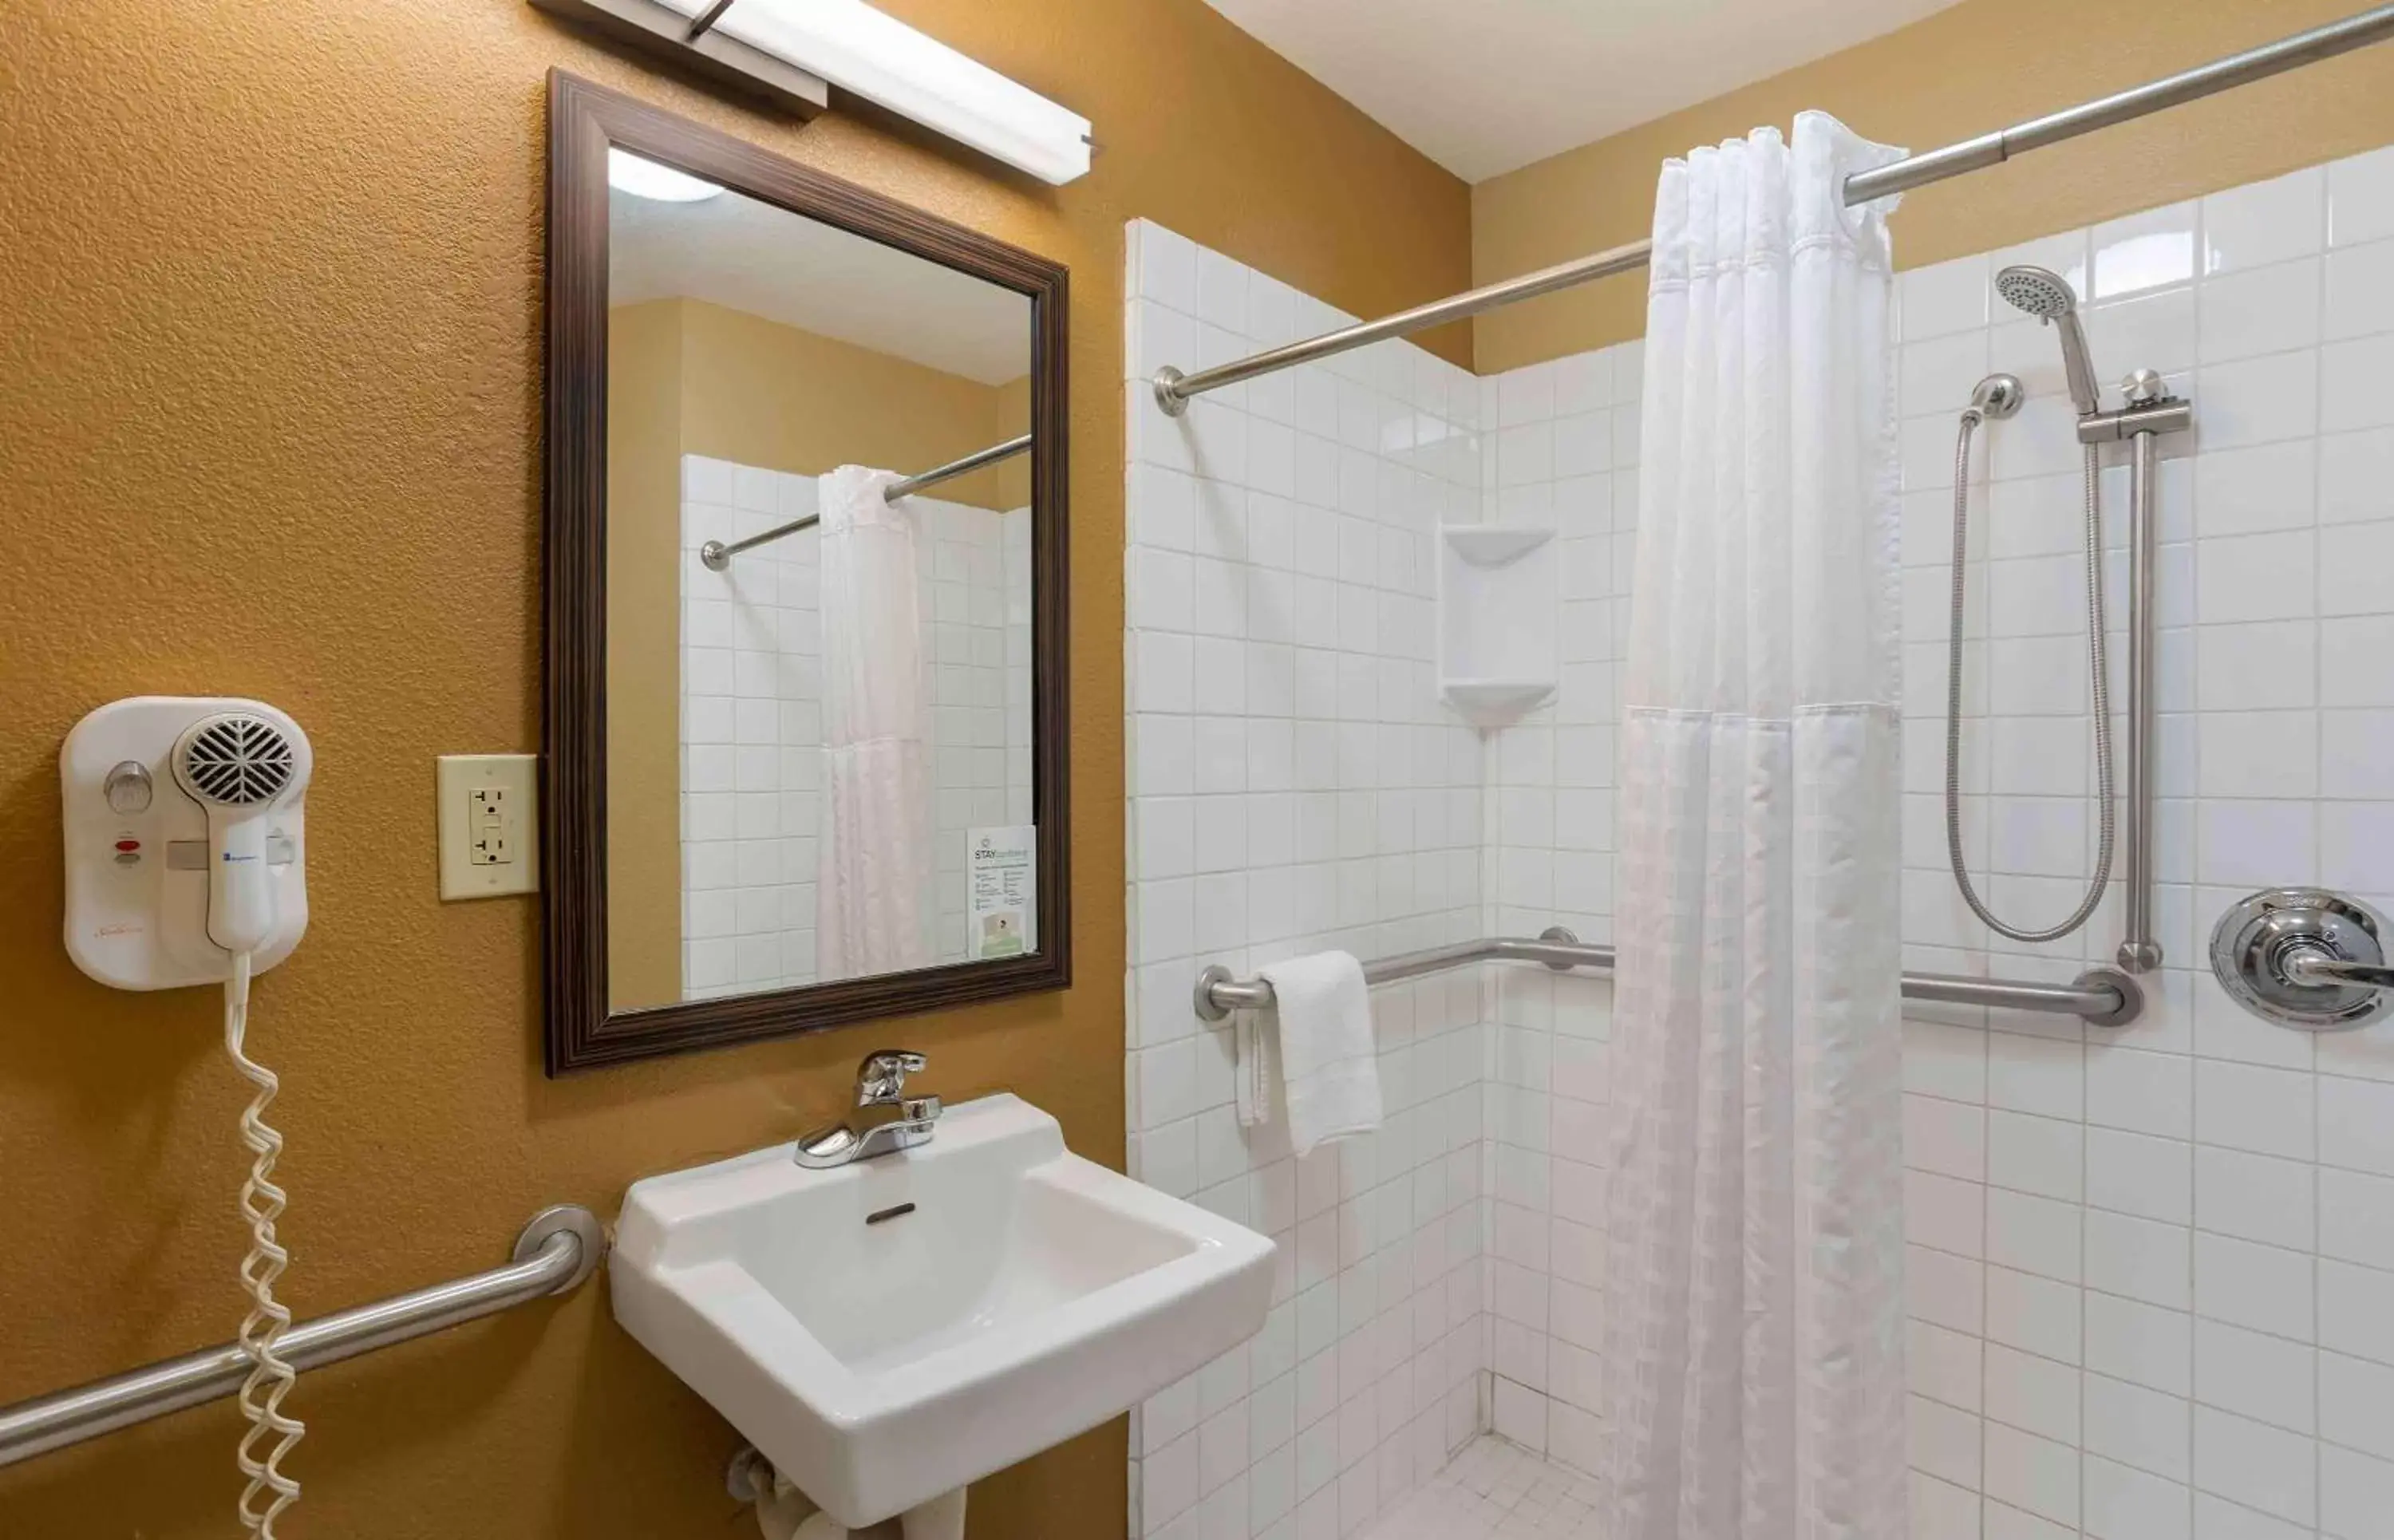 Bathroom in Extended Stay America Suites - Wilkes-Barre - Hwy 315